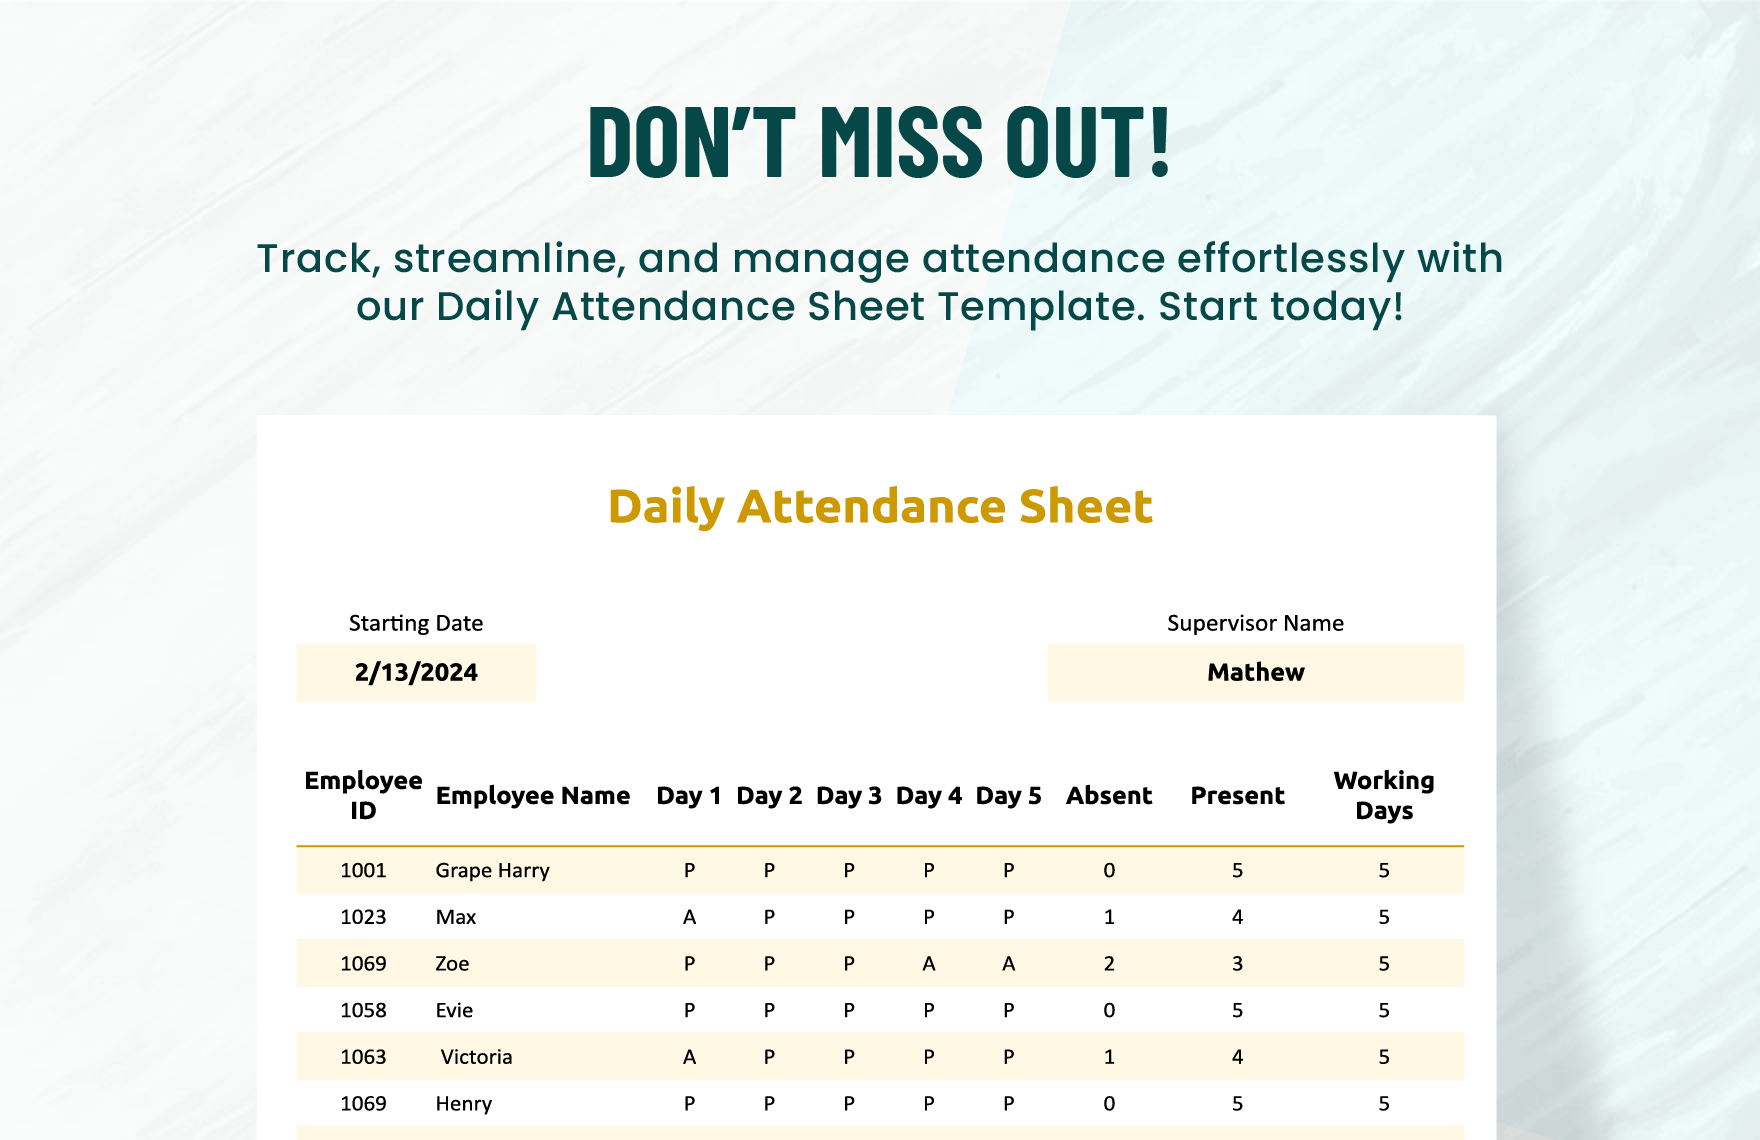 Daily Attendance Sheet Template